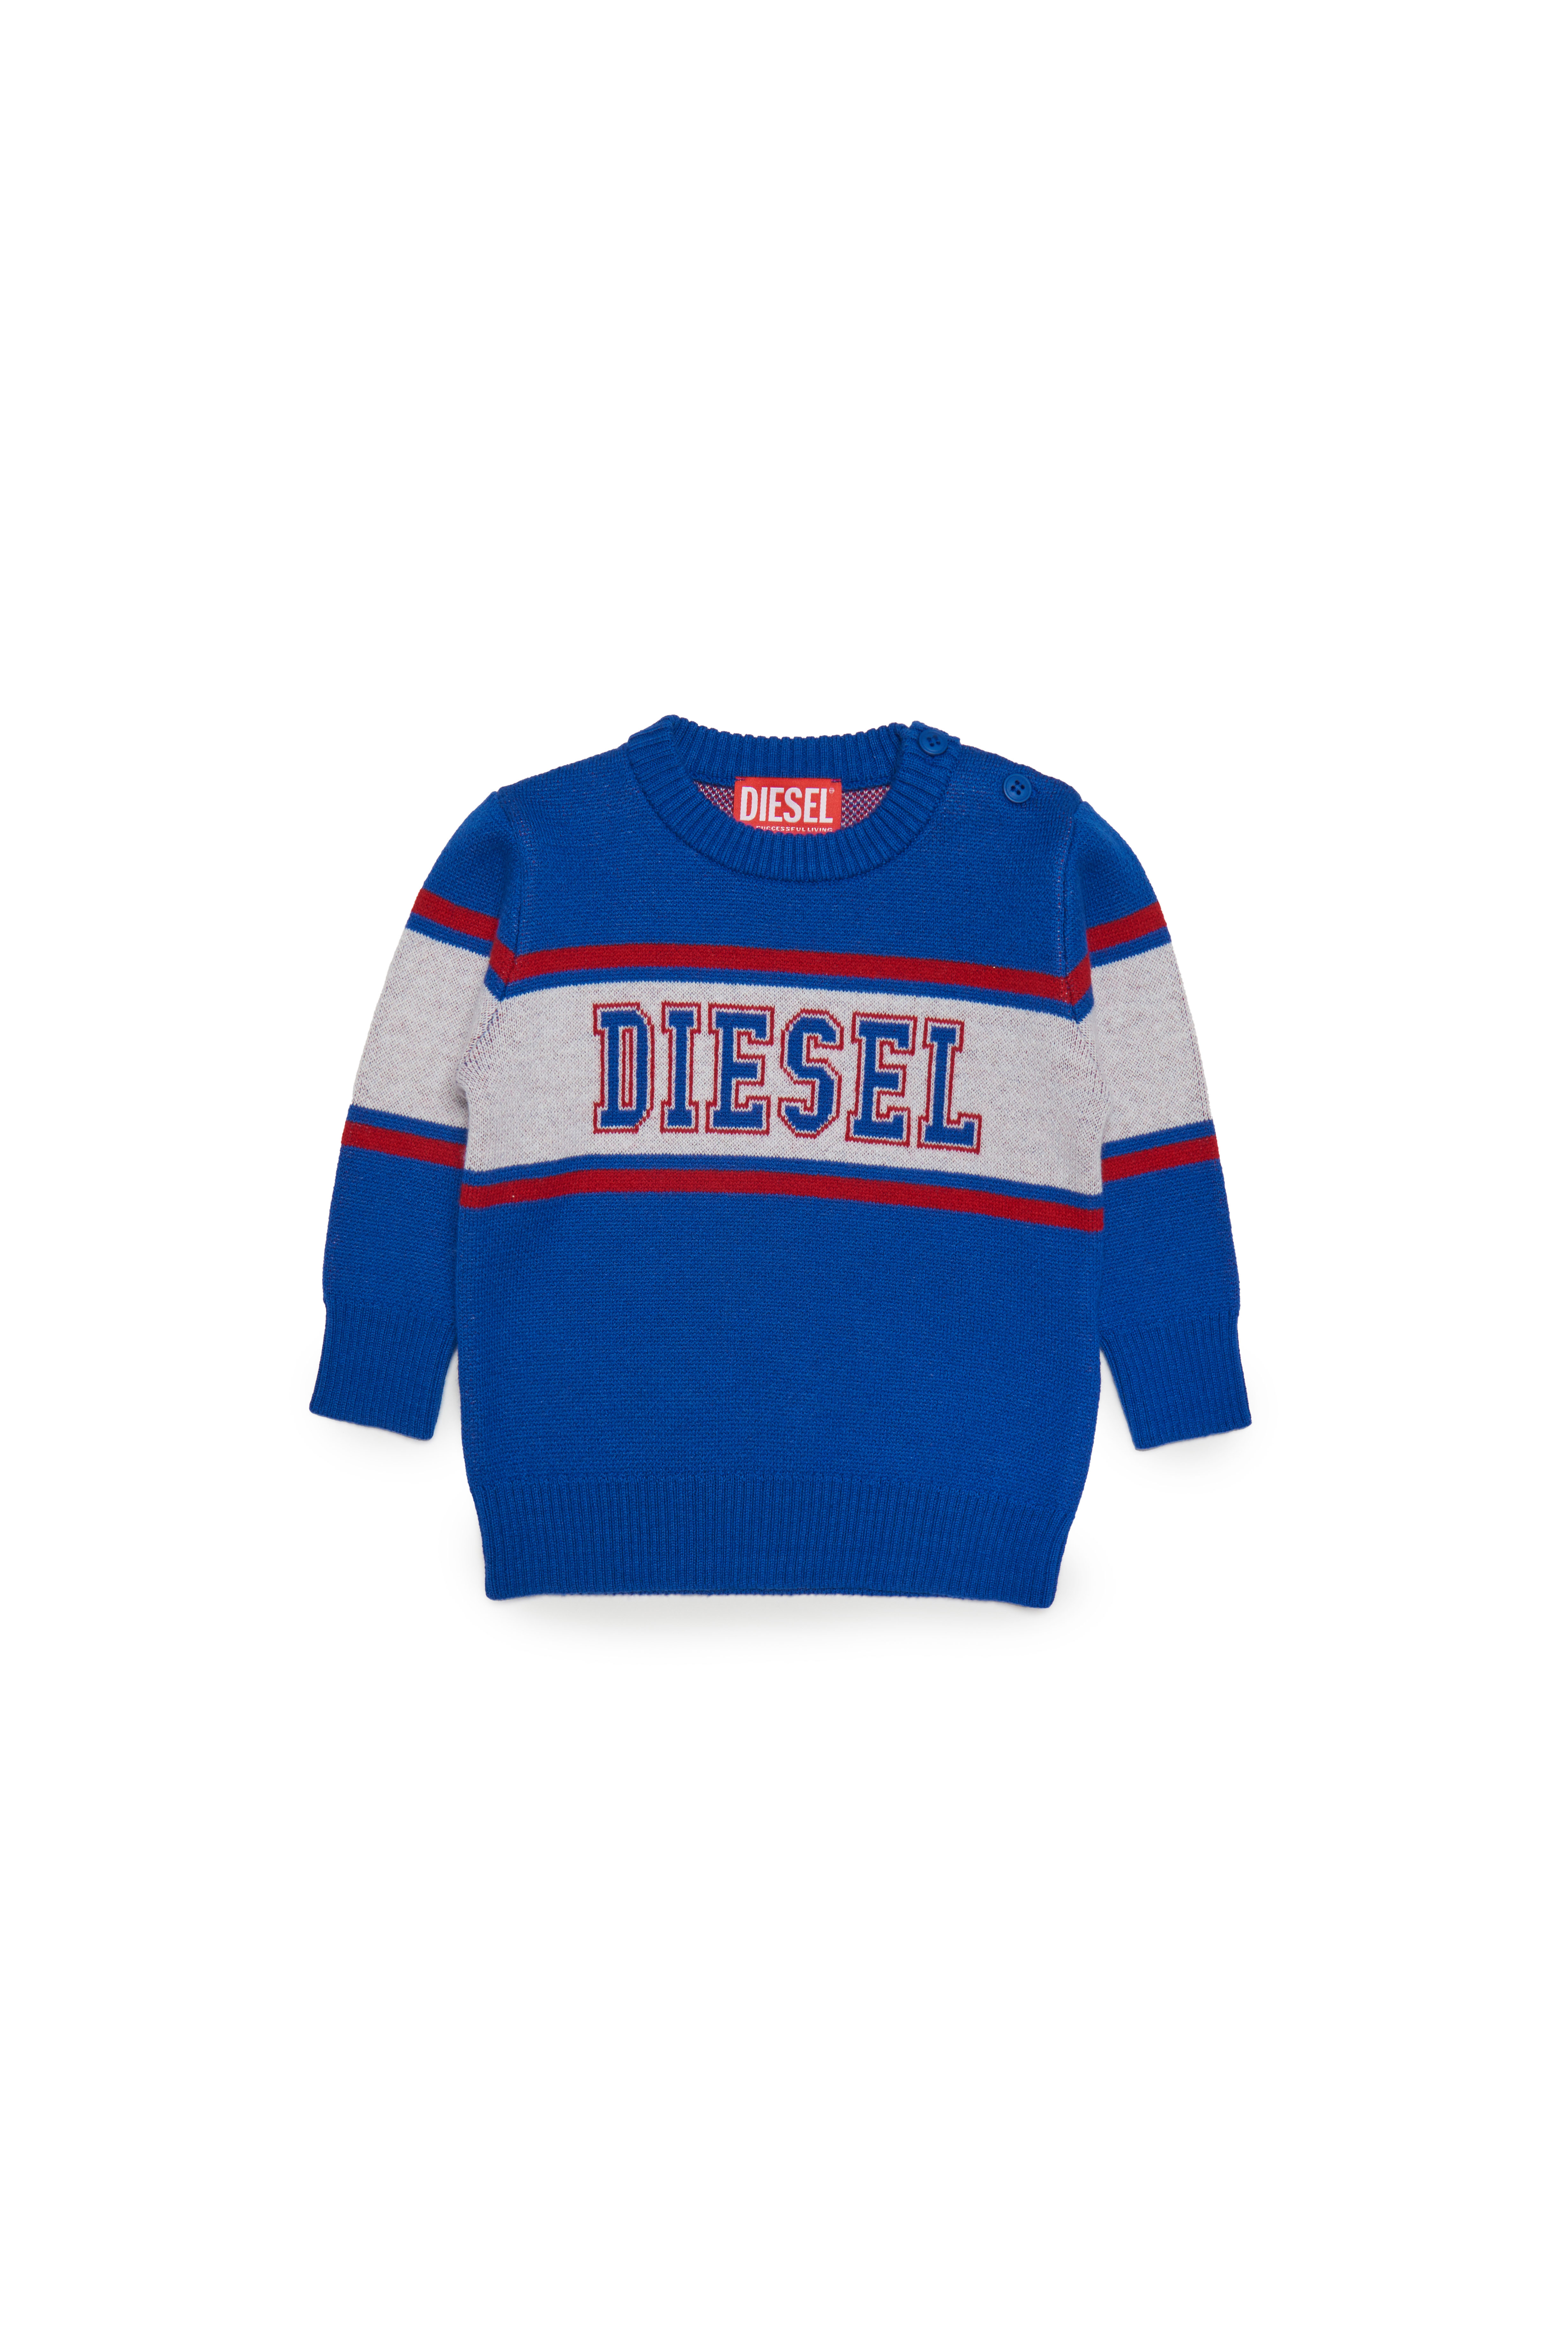 Diesel - Jersey de mezcla de lana con logotipo universitario - Punto - Hombre - Azul marino